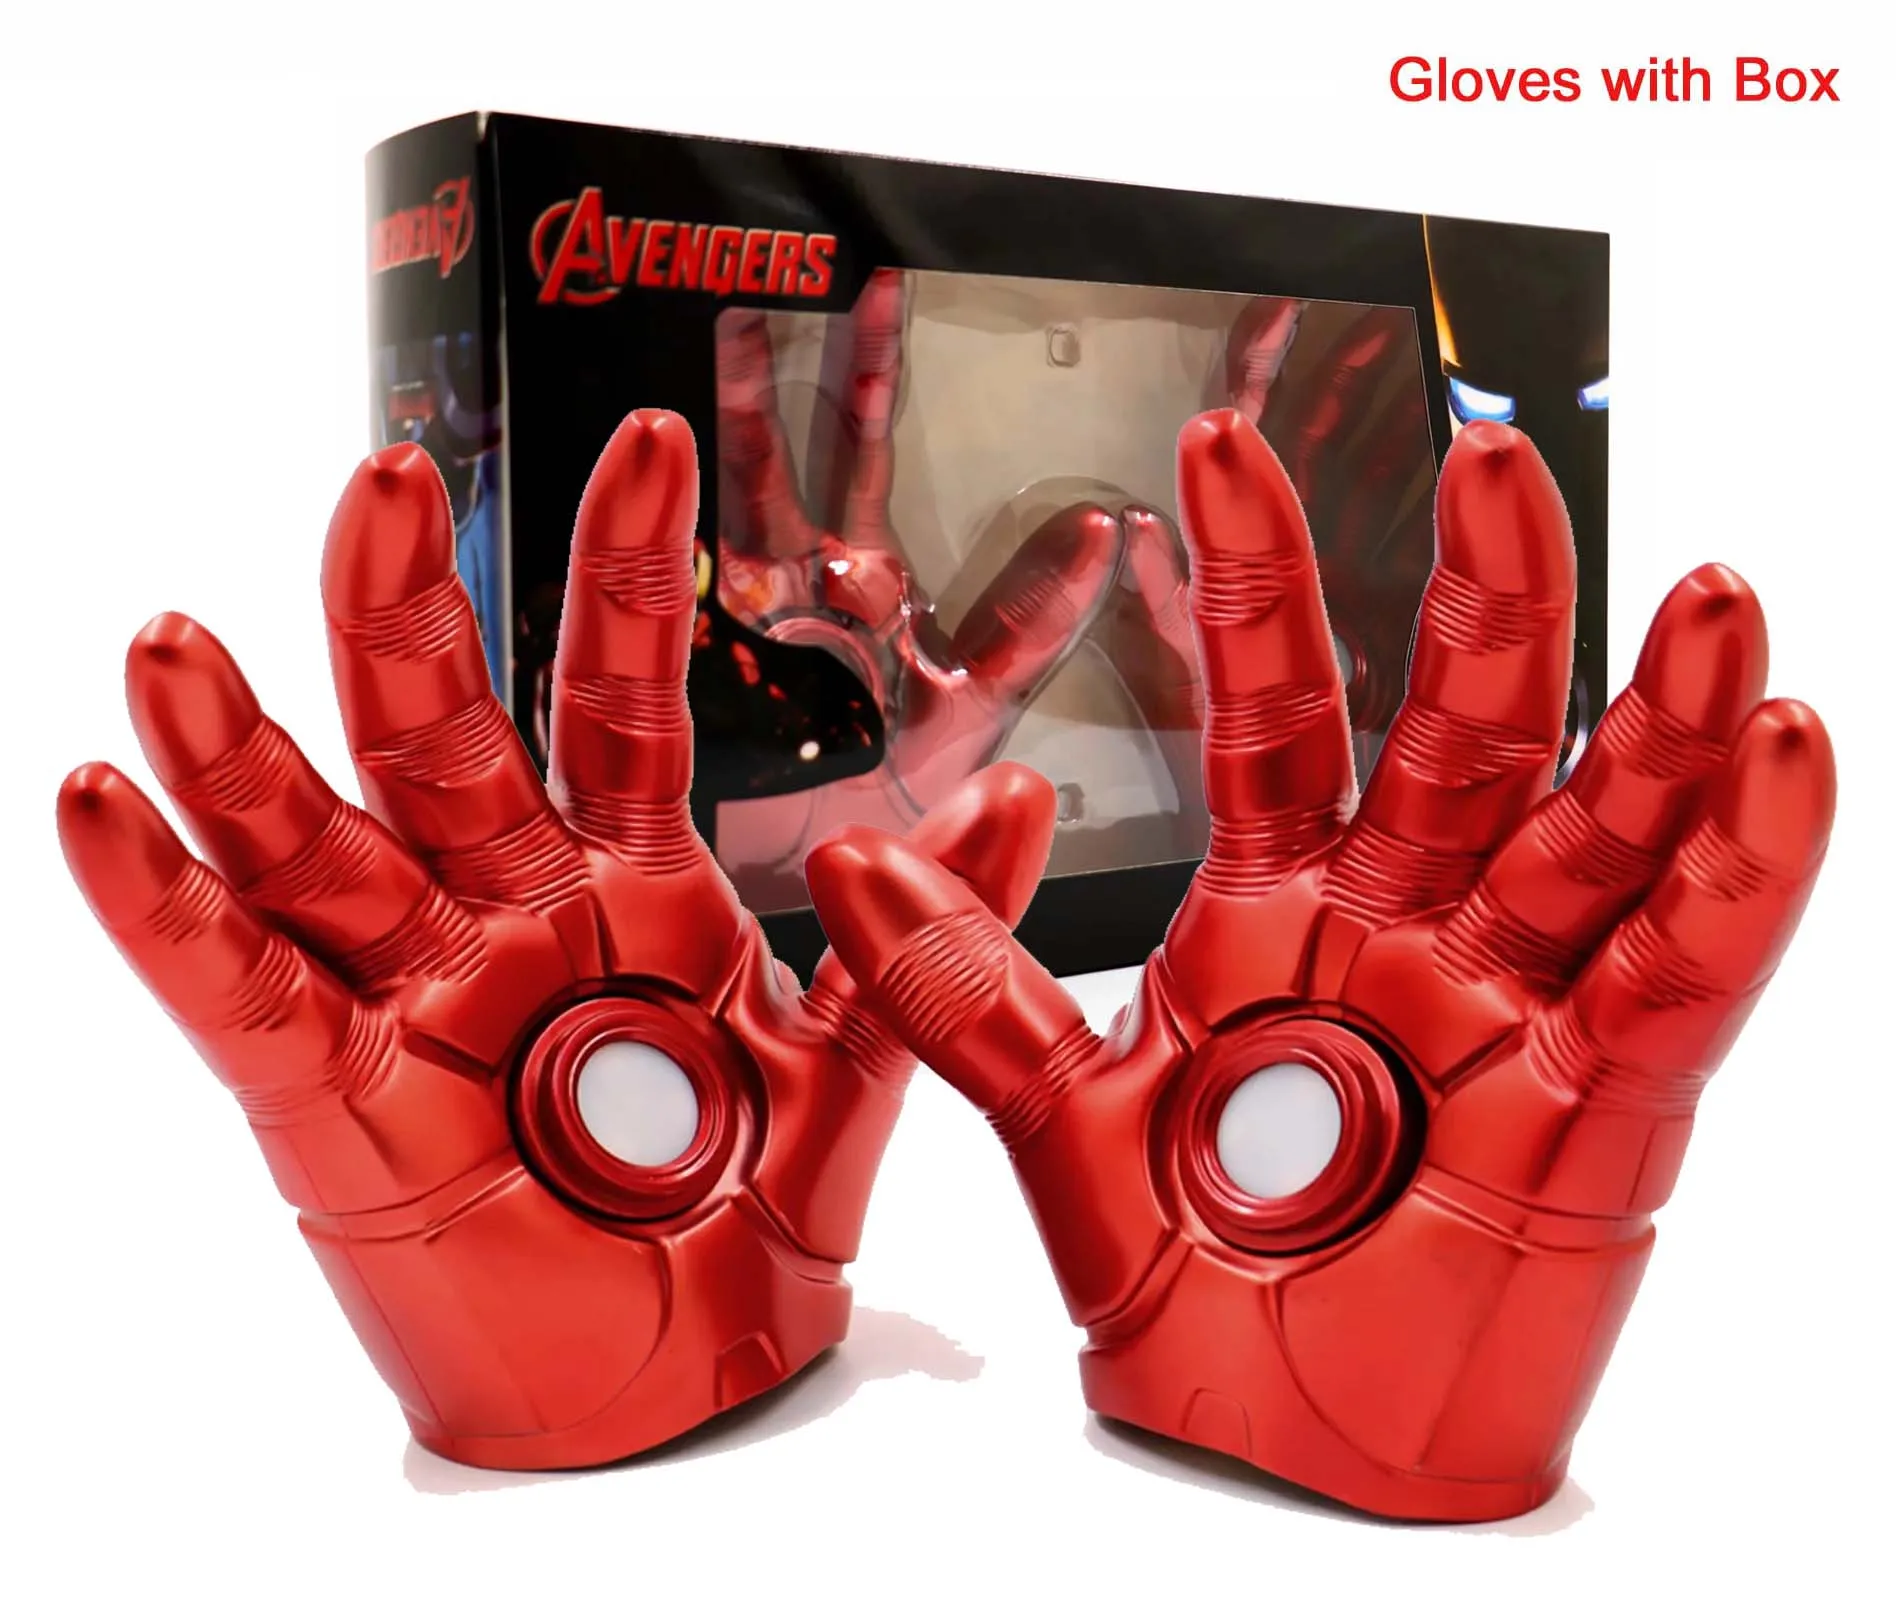 Горячая 1:1 масштаб Железный человек светодиодный светильник перчатки рука фигурка модель игрушки Инфракрасный эмиссионные перчатки косплей костюм вечерние подарок для детей Высокое качество - Цвет: Iron Man Glove W Box